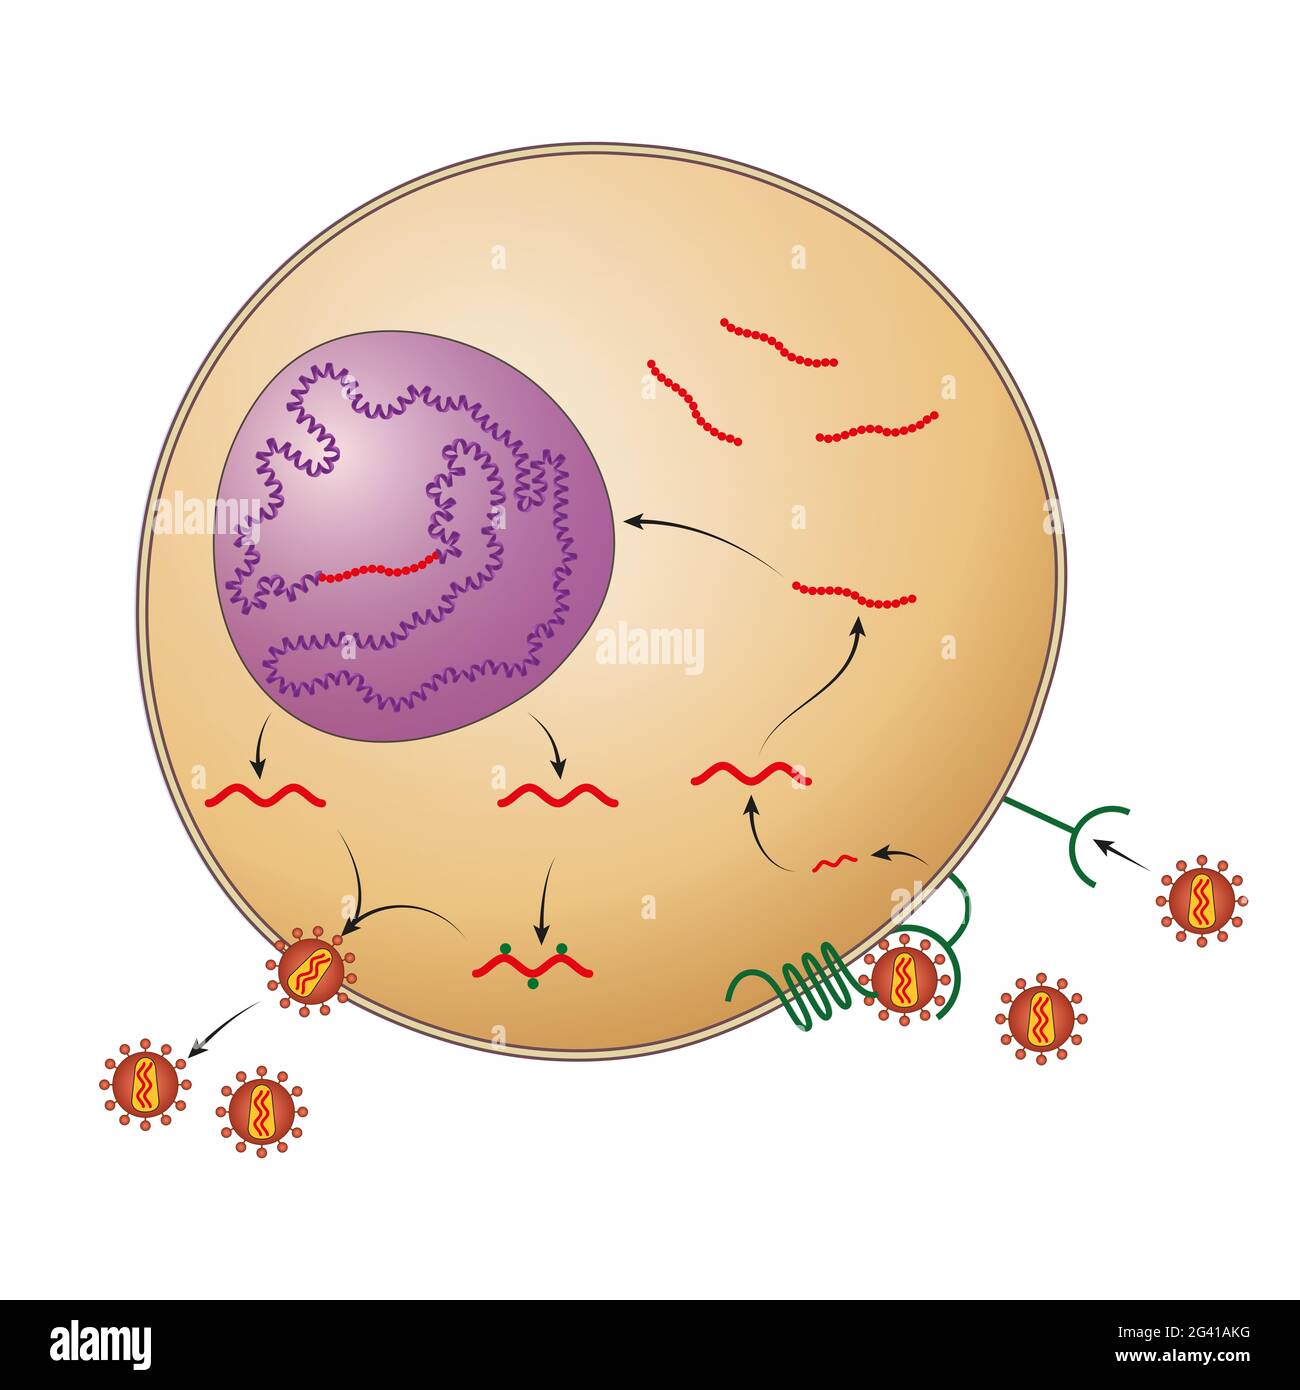 HIV-Replikationszyklus, der beginnt, wenn HIV mit der Oberfläche der Wirtszelle verschmilzt Stockfoto